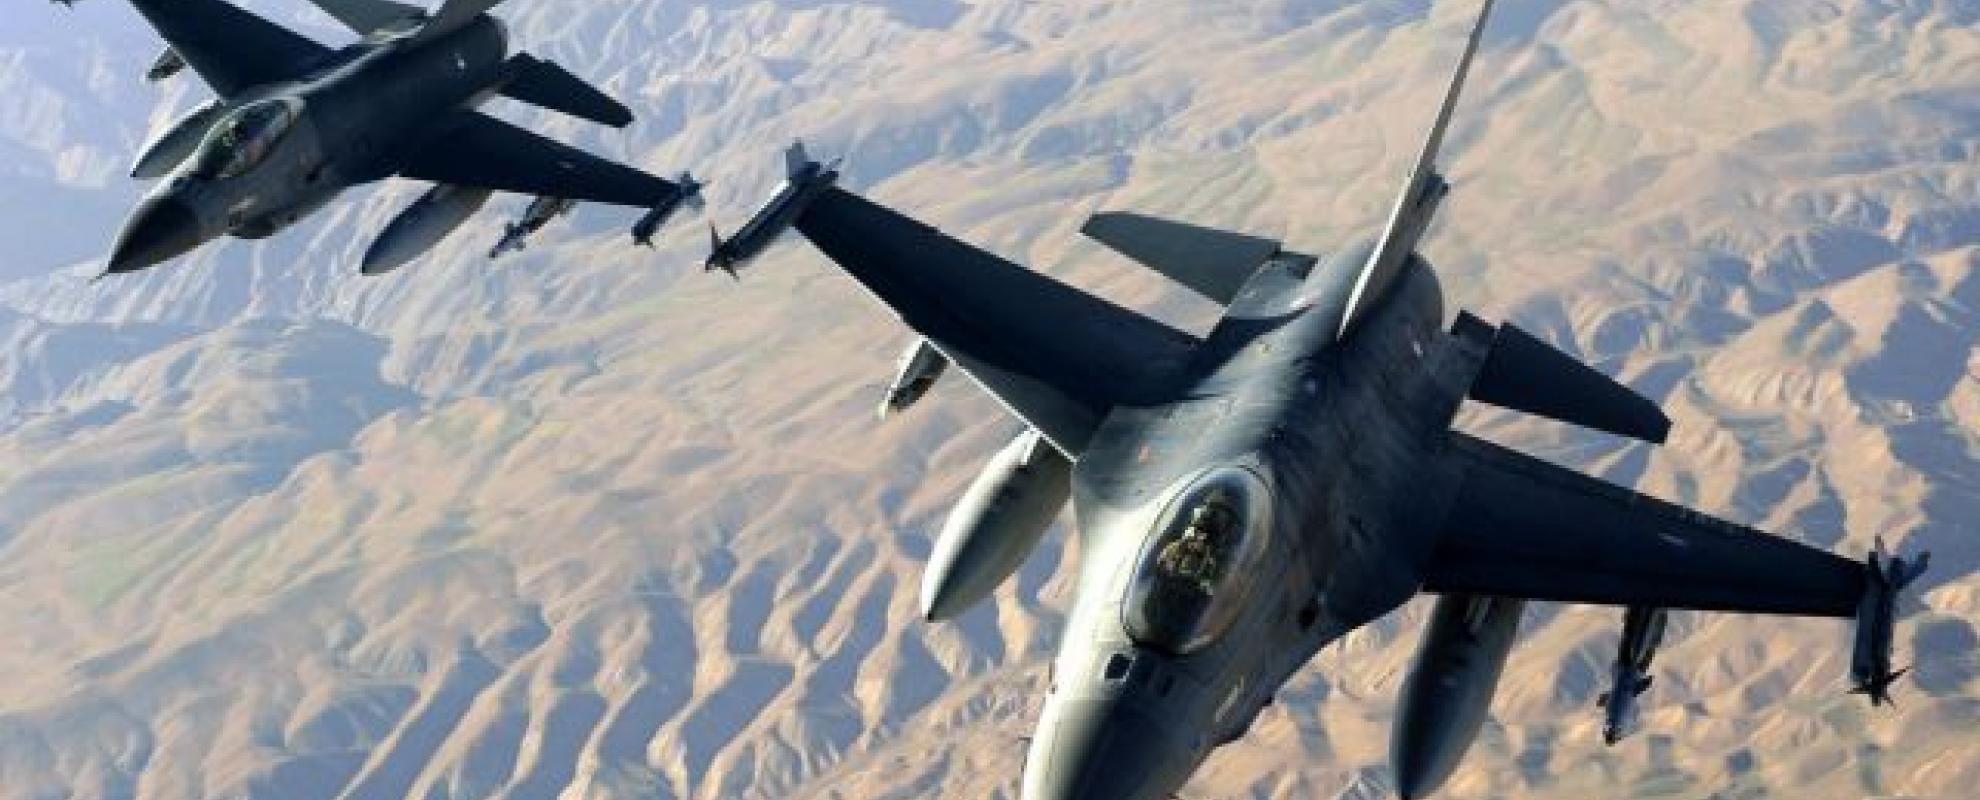 Weldra Belgische F-16's boven Syrië?